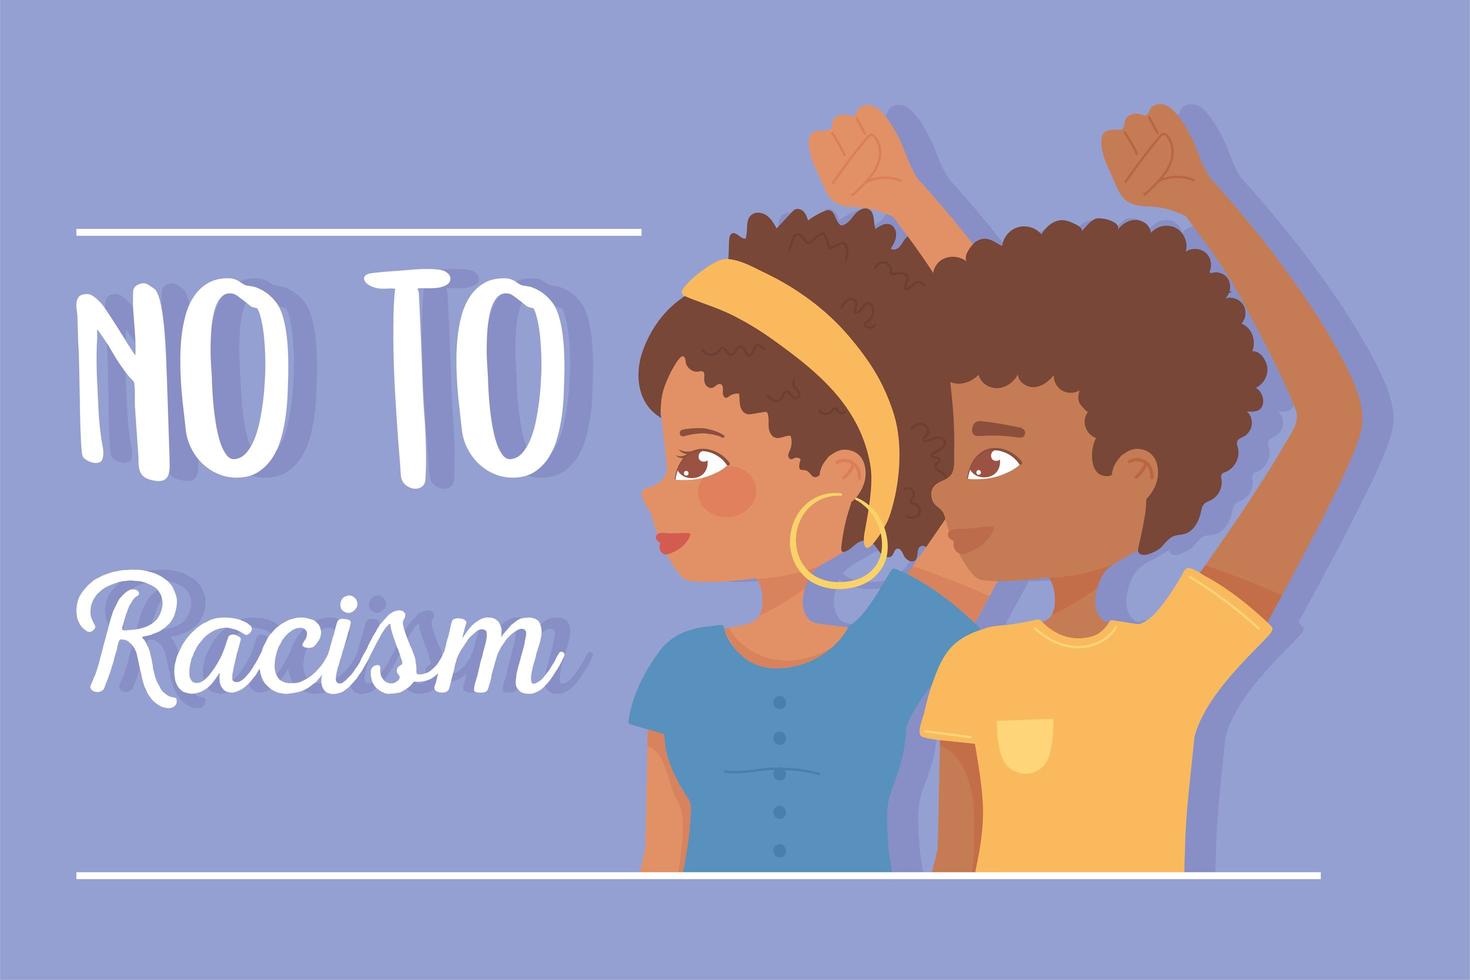 Black vit une fille et un garçon afro levés la main pour protester contre le racisme vecteur